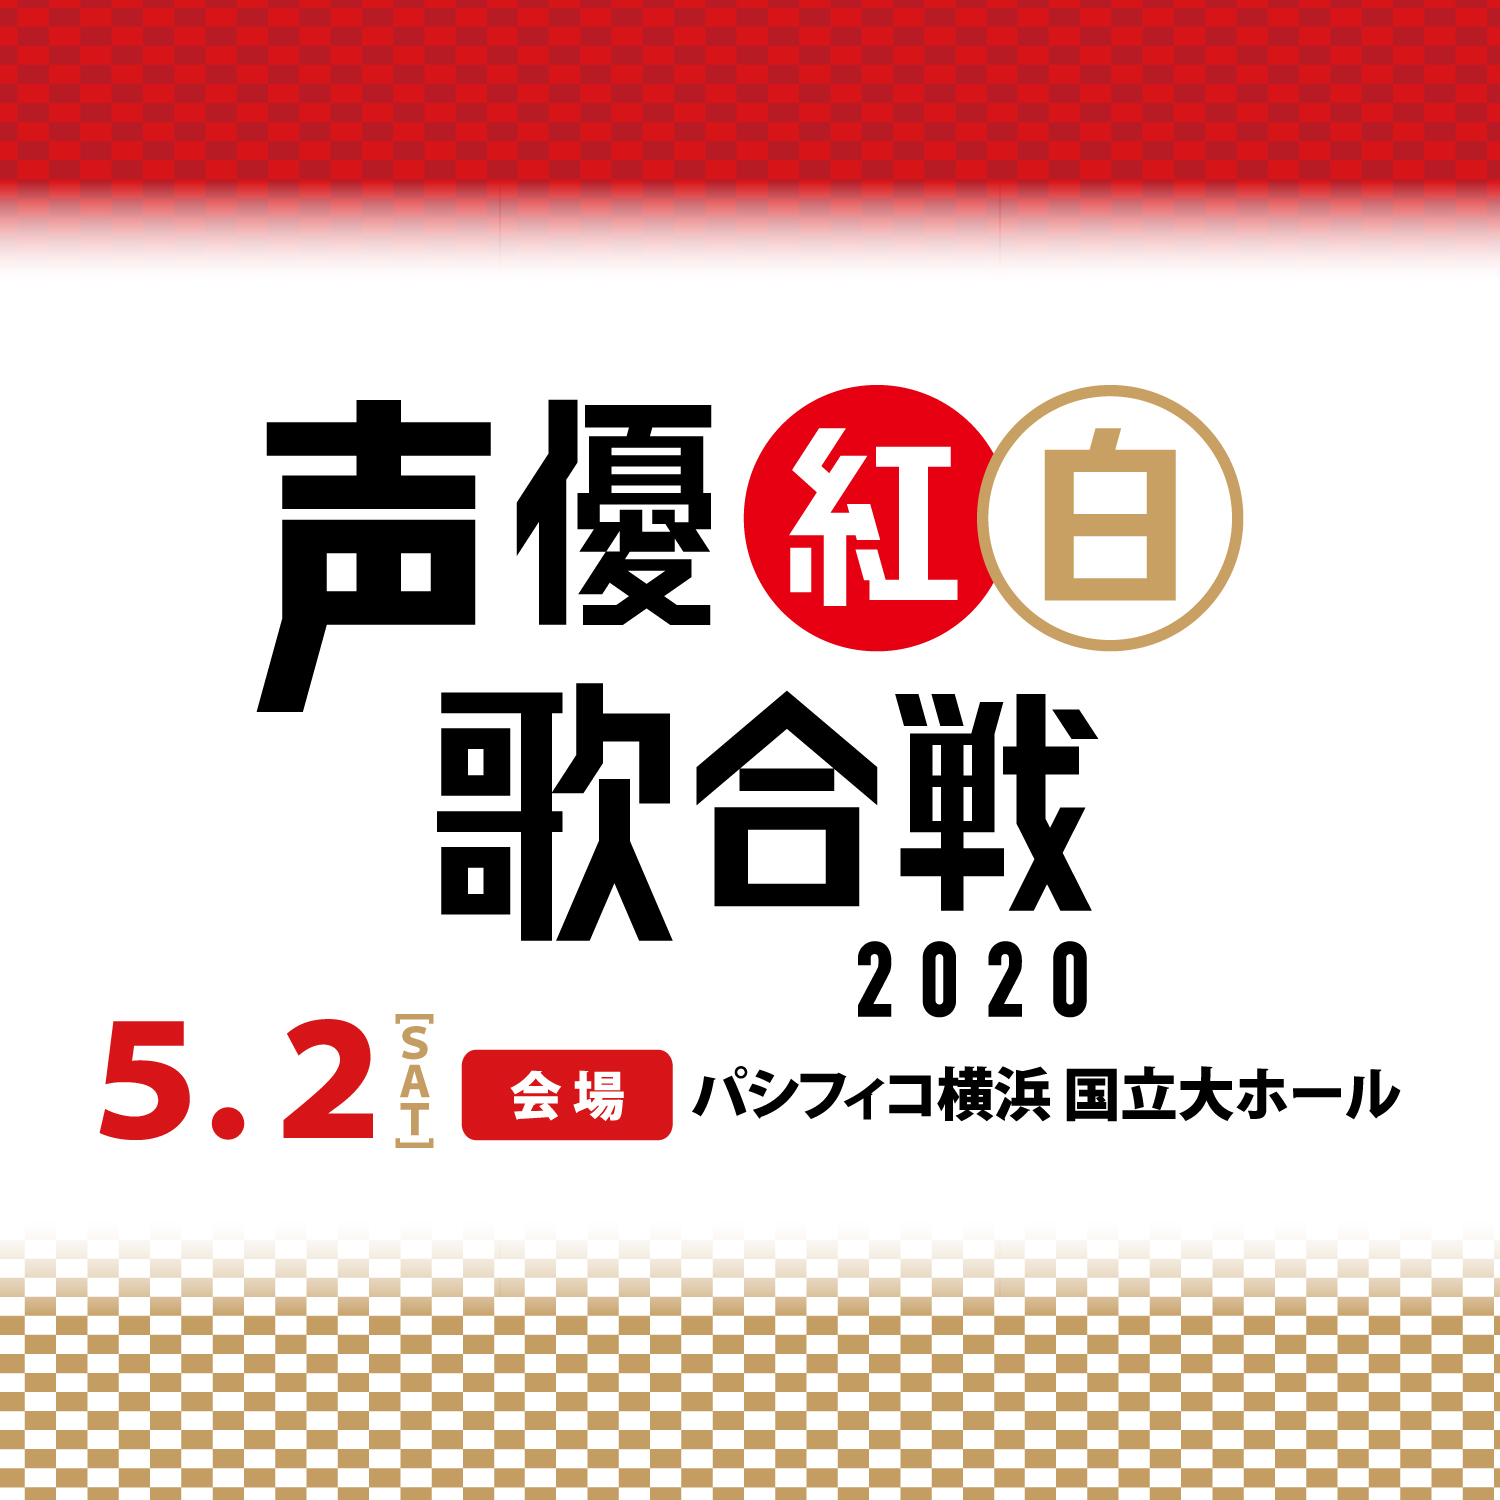 『声優紅白歌合戦2020』ロゴ (C)「声優紅白歌合戦」実行委員会